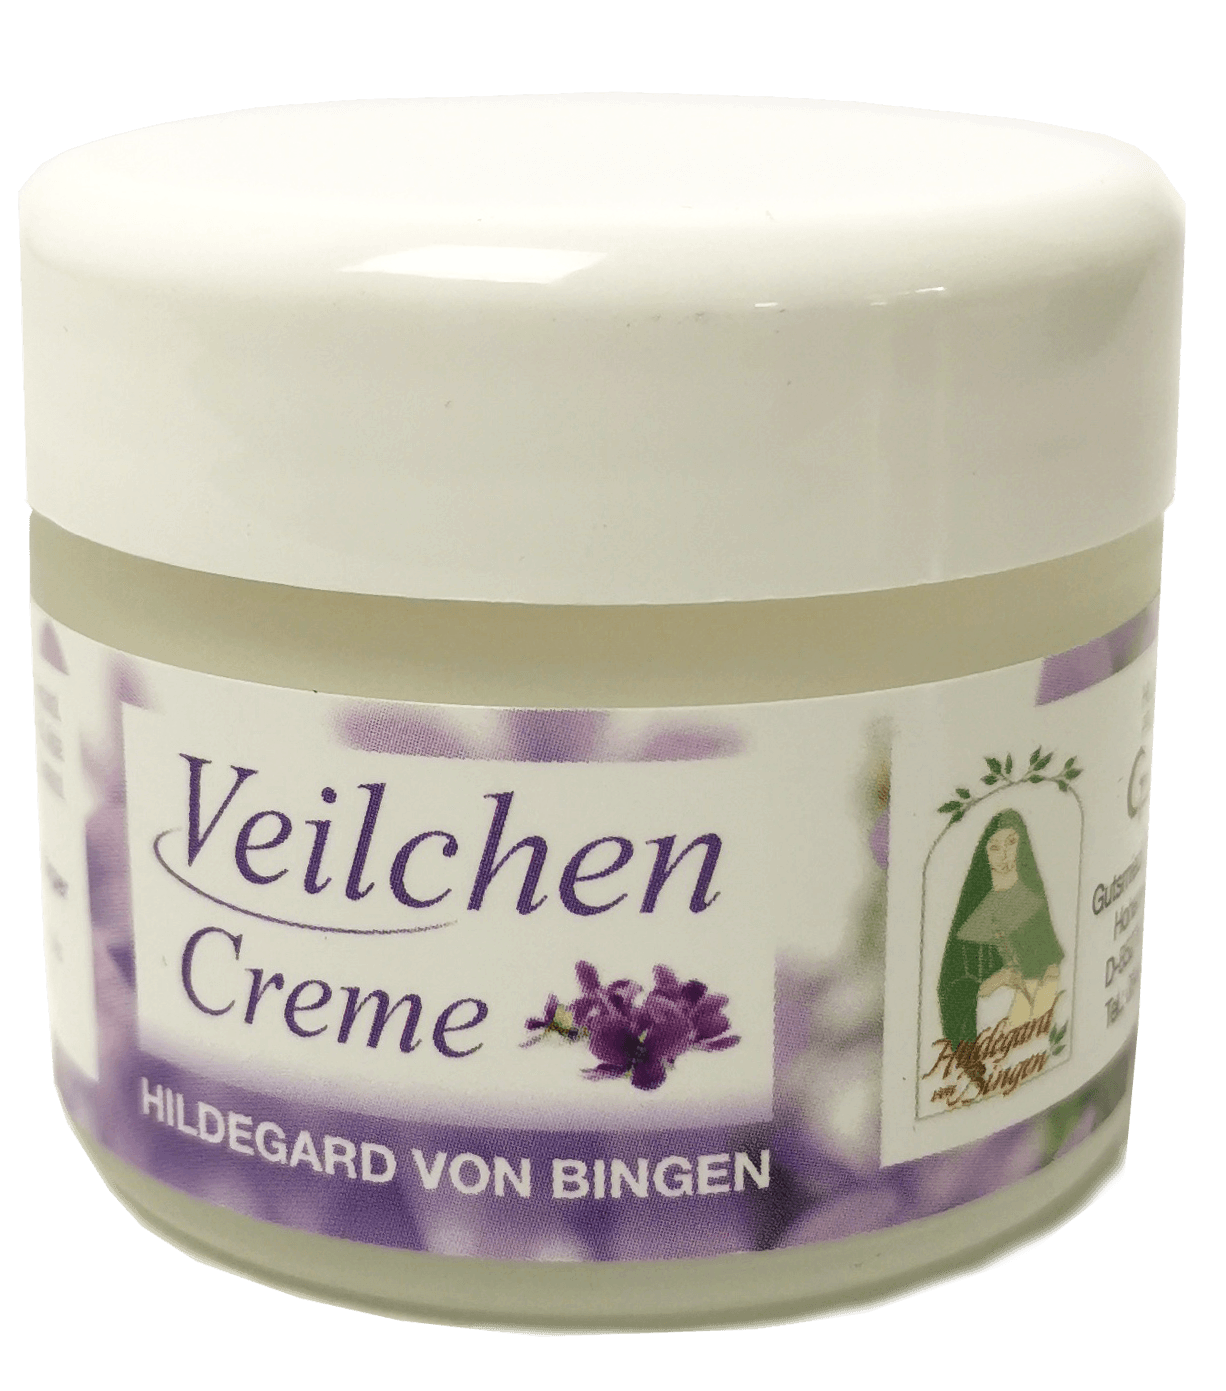 Veilchencreme Hildegard von Bingen